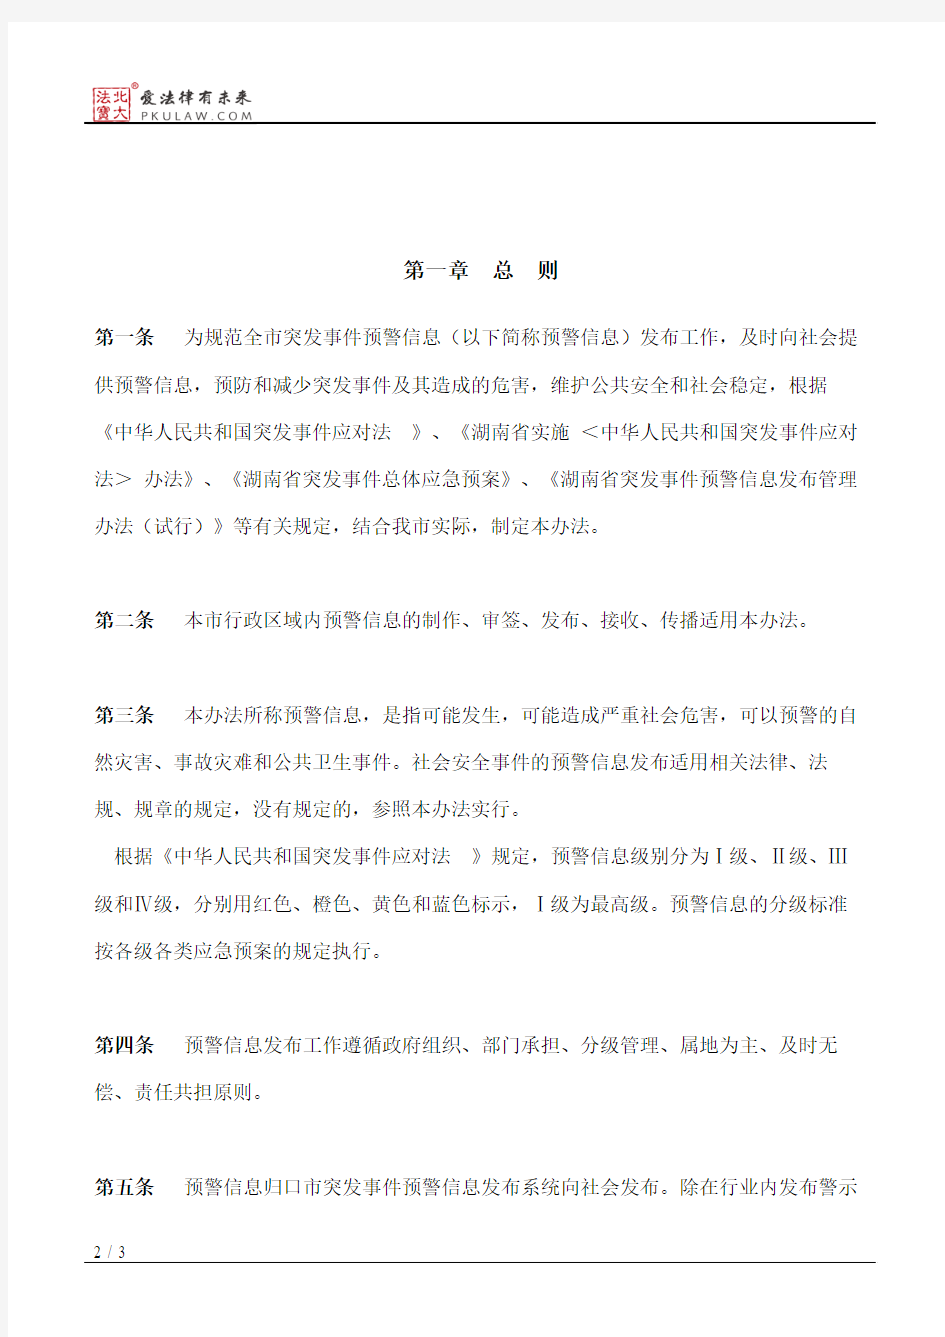 衡阳市人民政府办公室关于印发《衡阳市突发事件预警信息发布管理